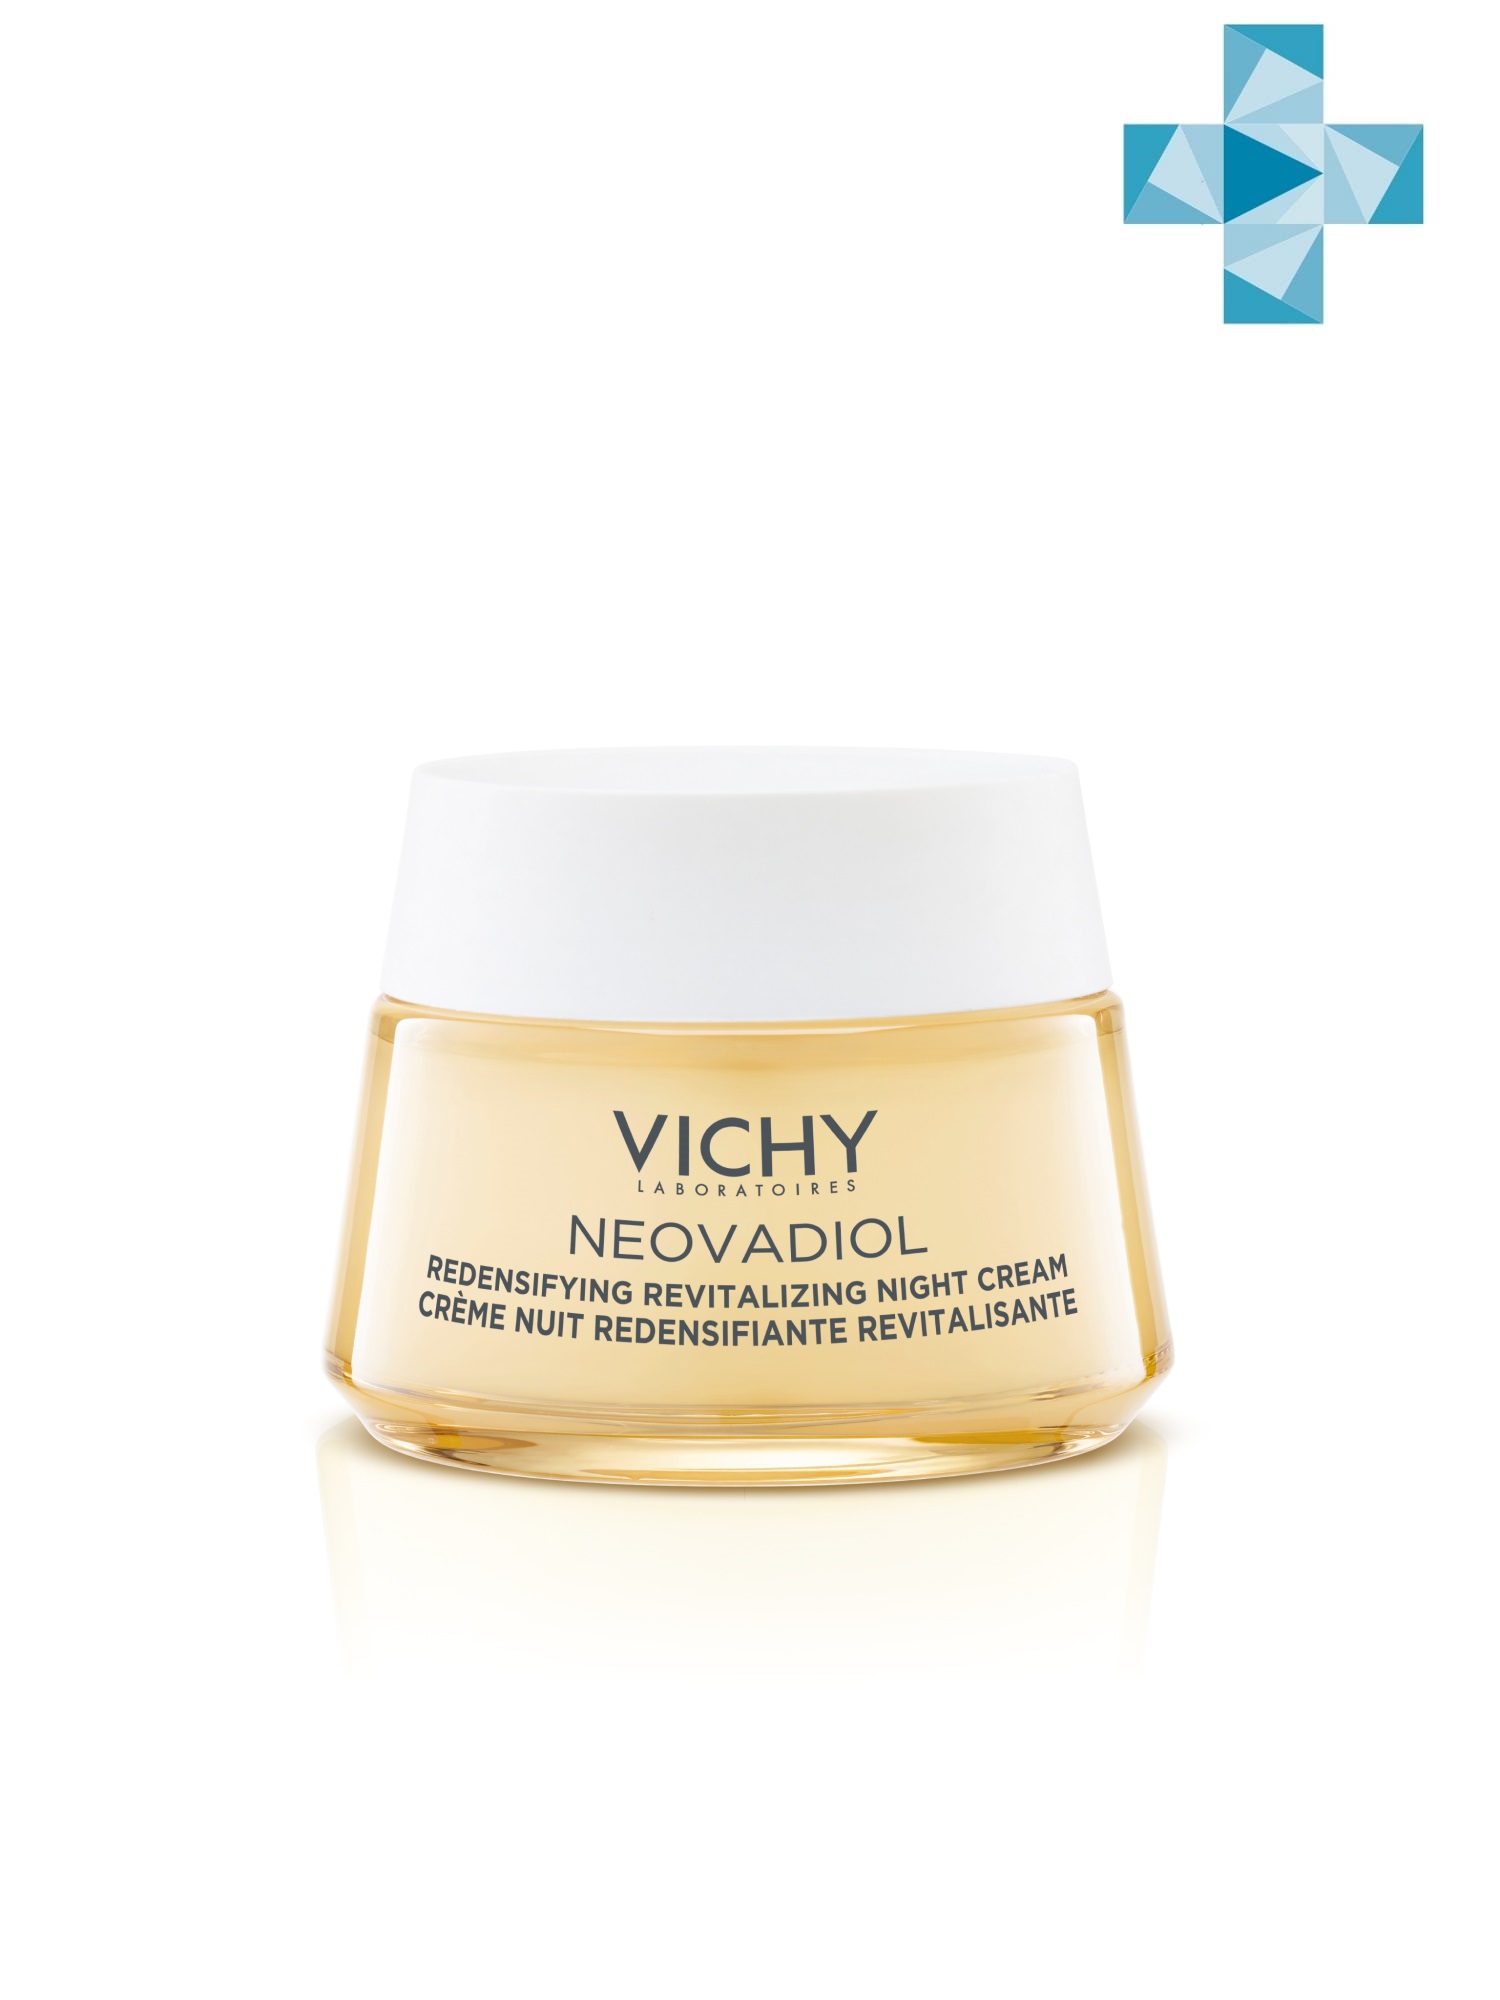 Vichy Уплотняющий охлаждающий ночной крем для кожи в период пред-менопаузы, 50 мл (Vichy, Neovadiol) уплотняющий охлаждающий ночной крем vichy neovadiol 50 мл